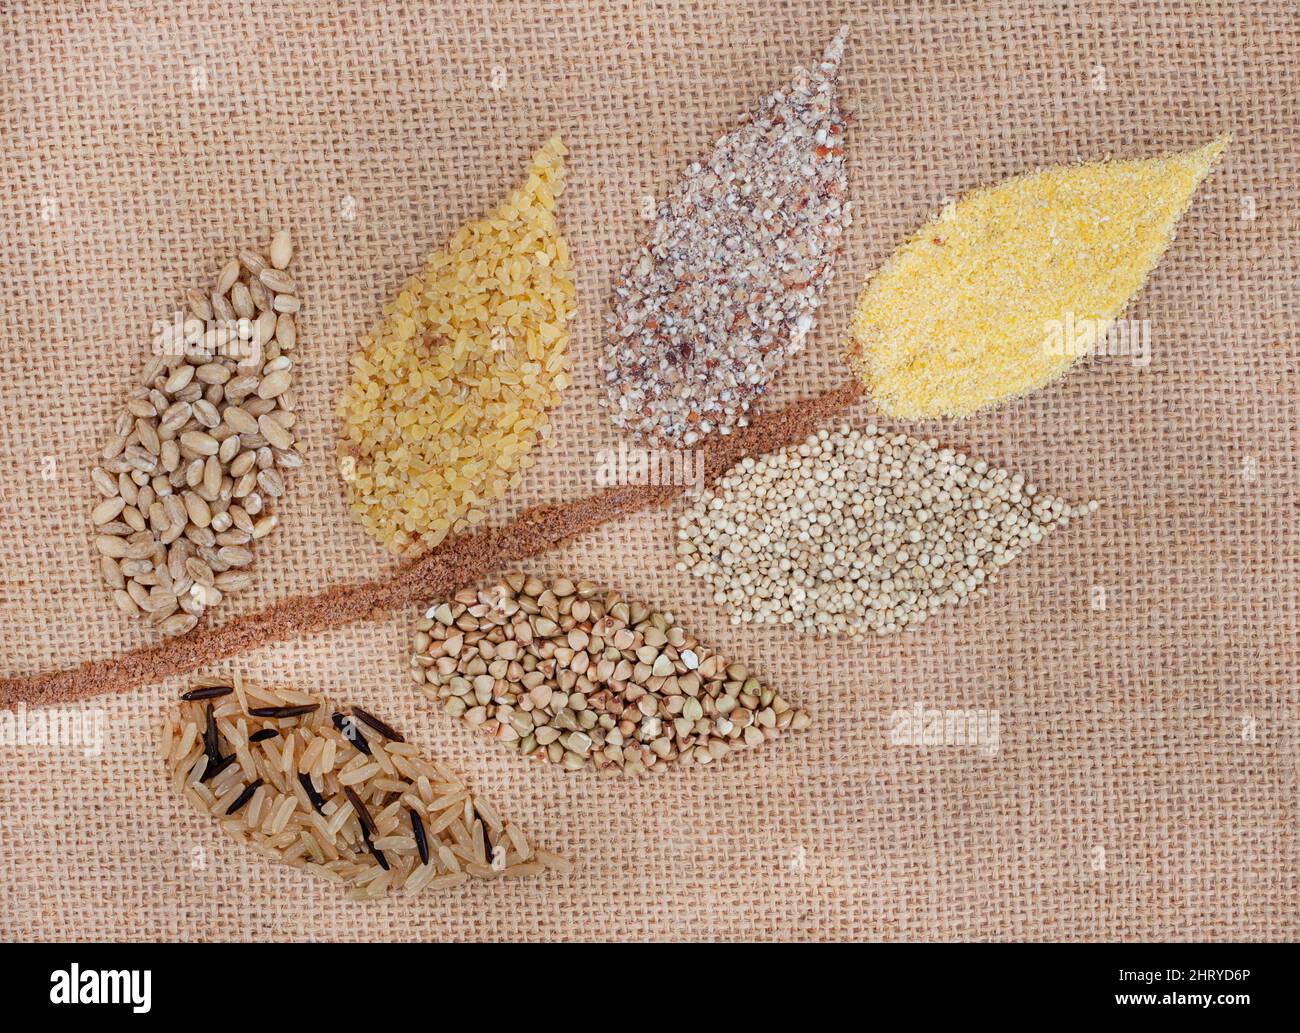 Sélection de grains sains différents et alternatifs en forme de fleur de blé Banque D'Images